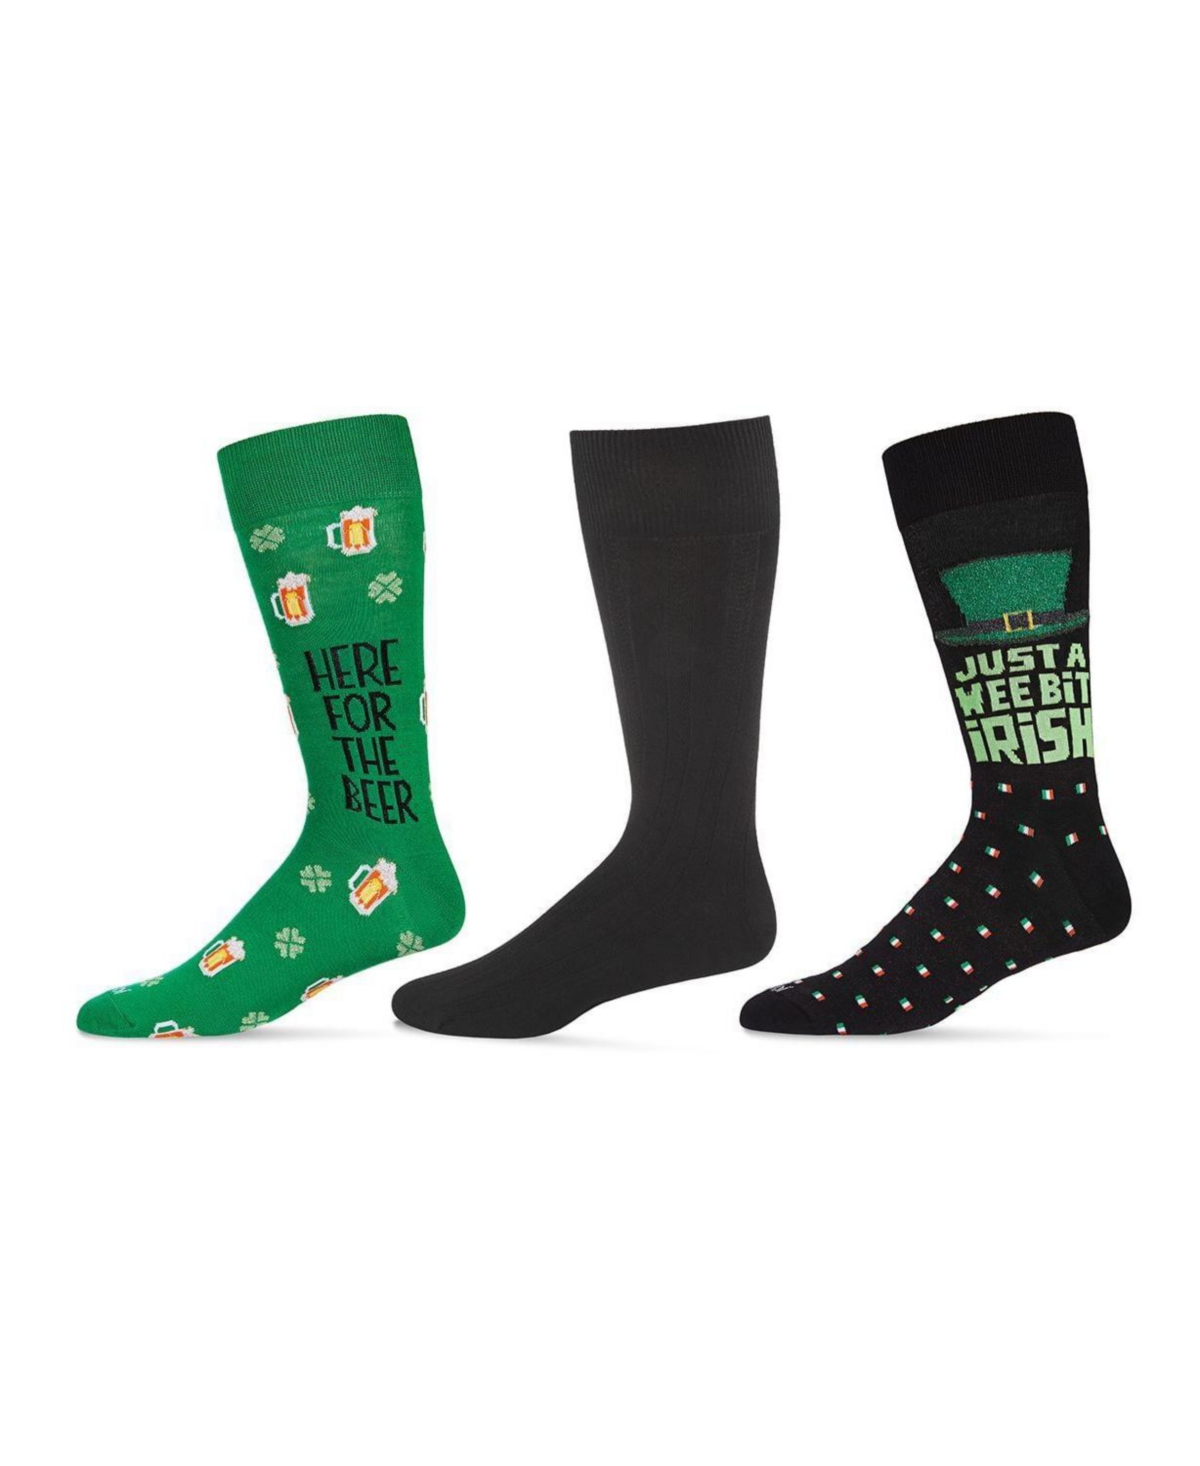 Men's St. Patrick's Day Assortment Socks, Pack of 3 - Green, Black